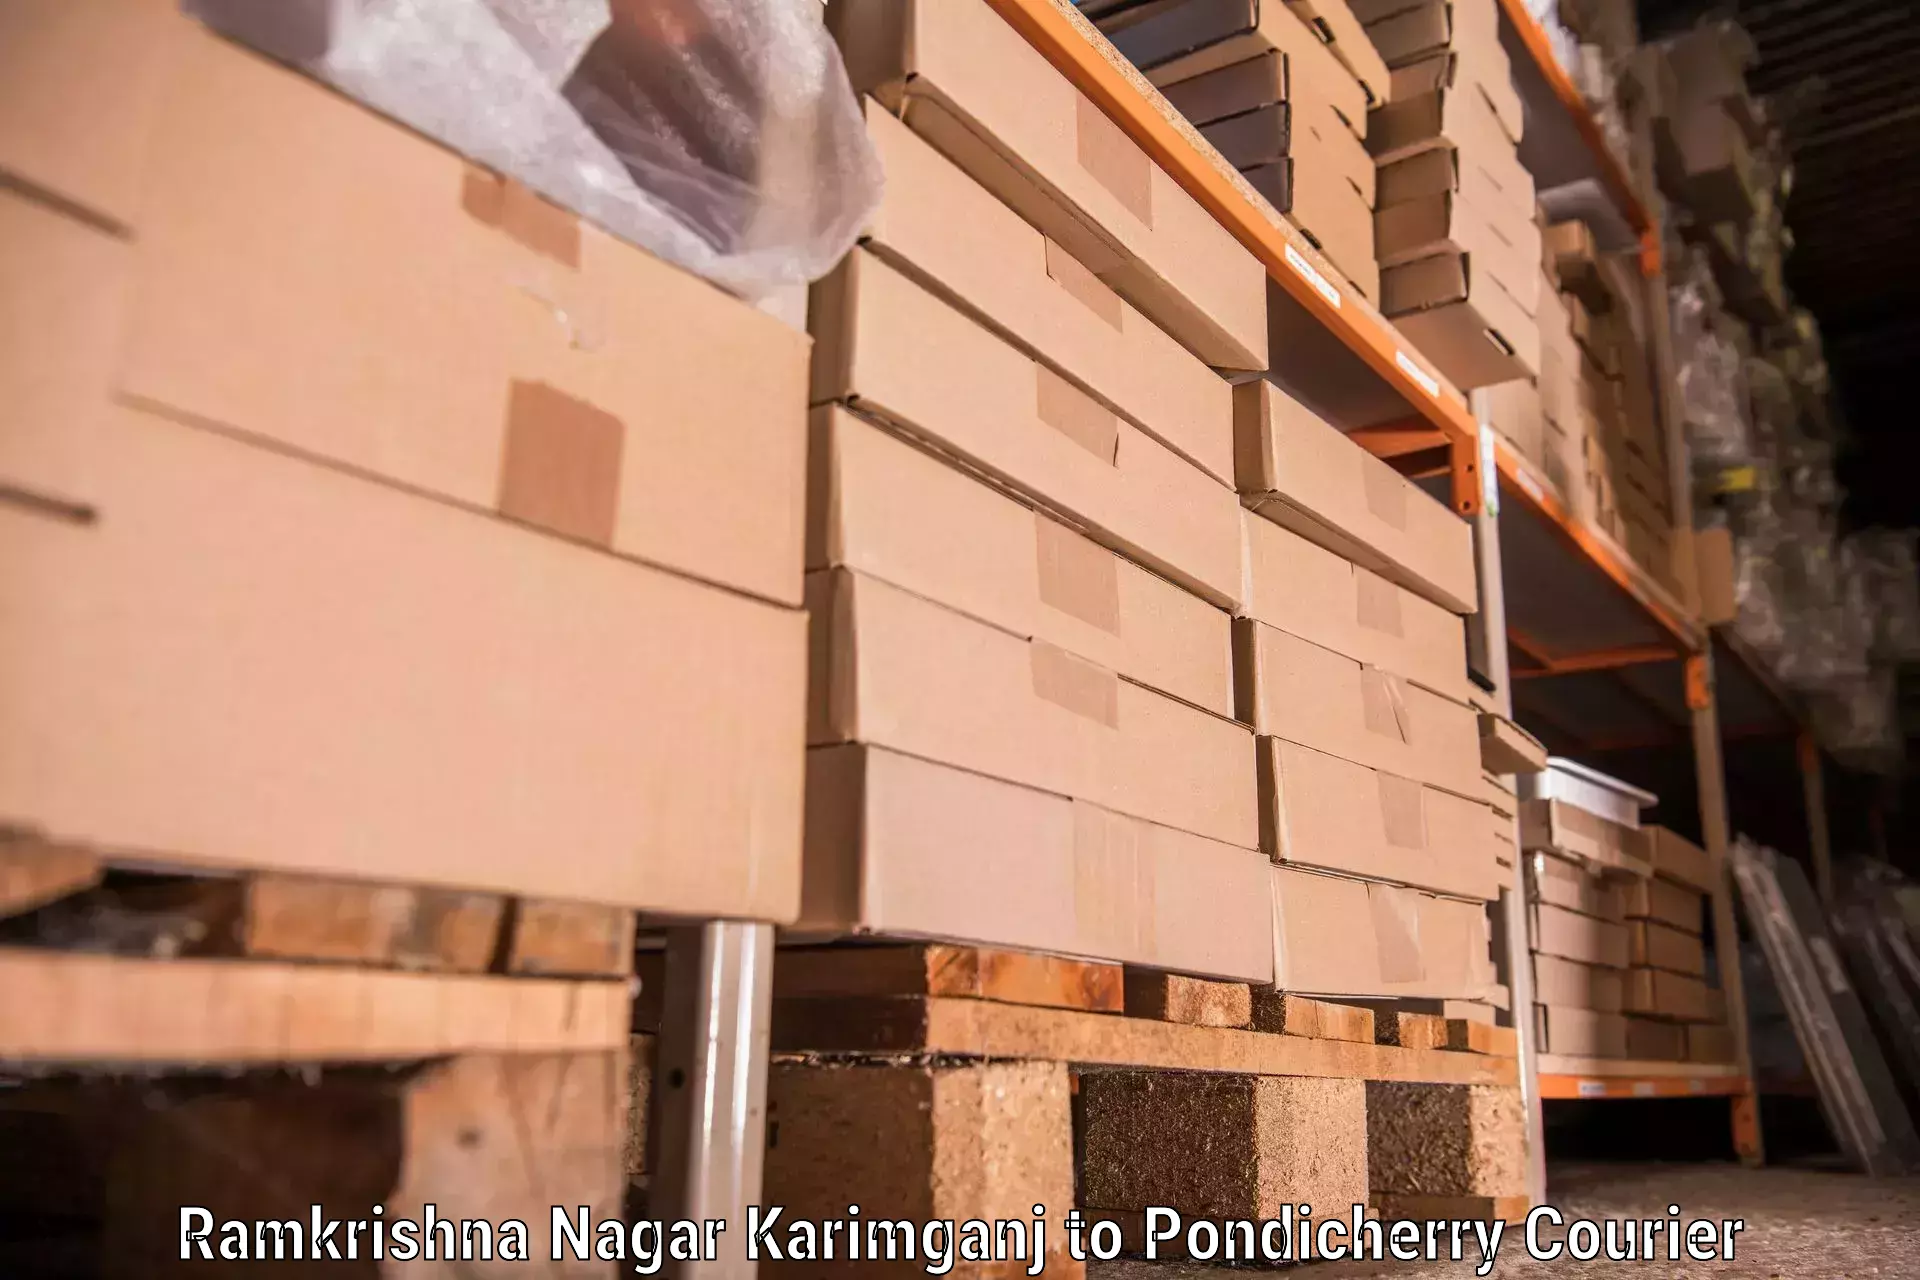 Furniture delivery service Ramkrishna Nagar Karimganj to Pondicherry University